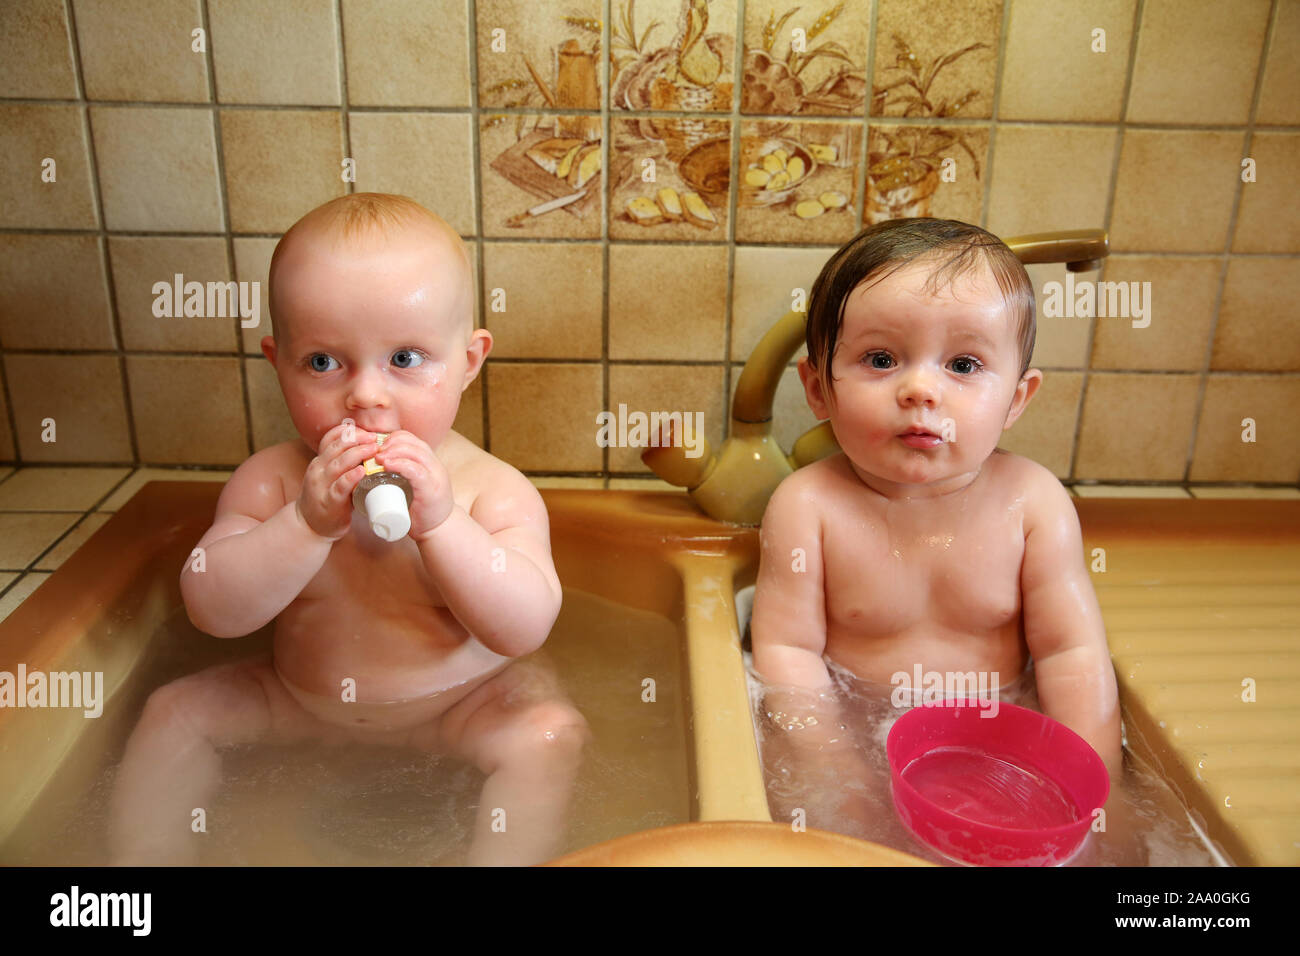 Nourrisson de 10 mois pour le bain dans l'évier de cuisine Banque D'Images